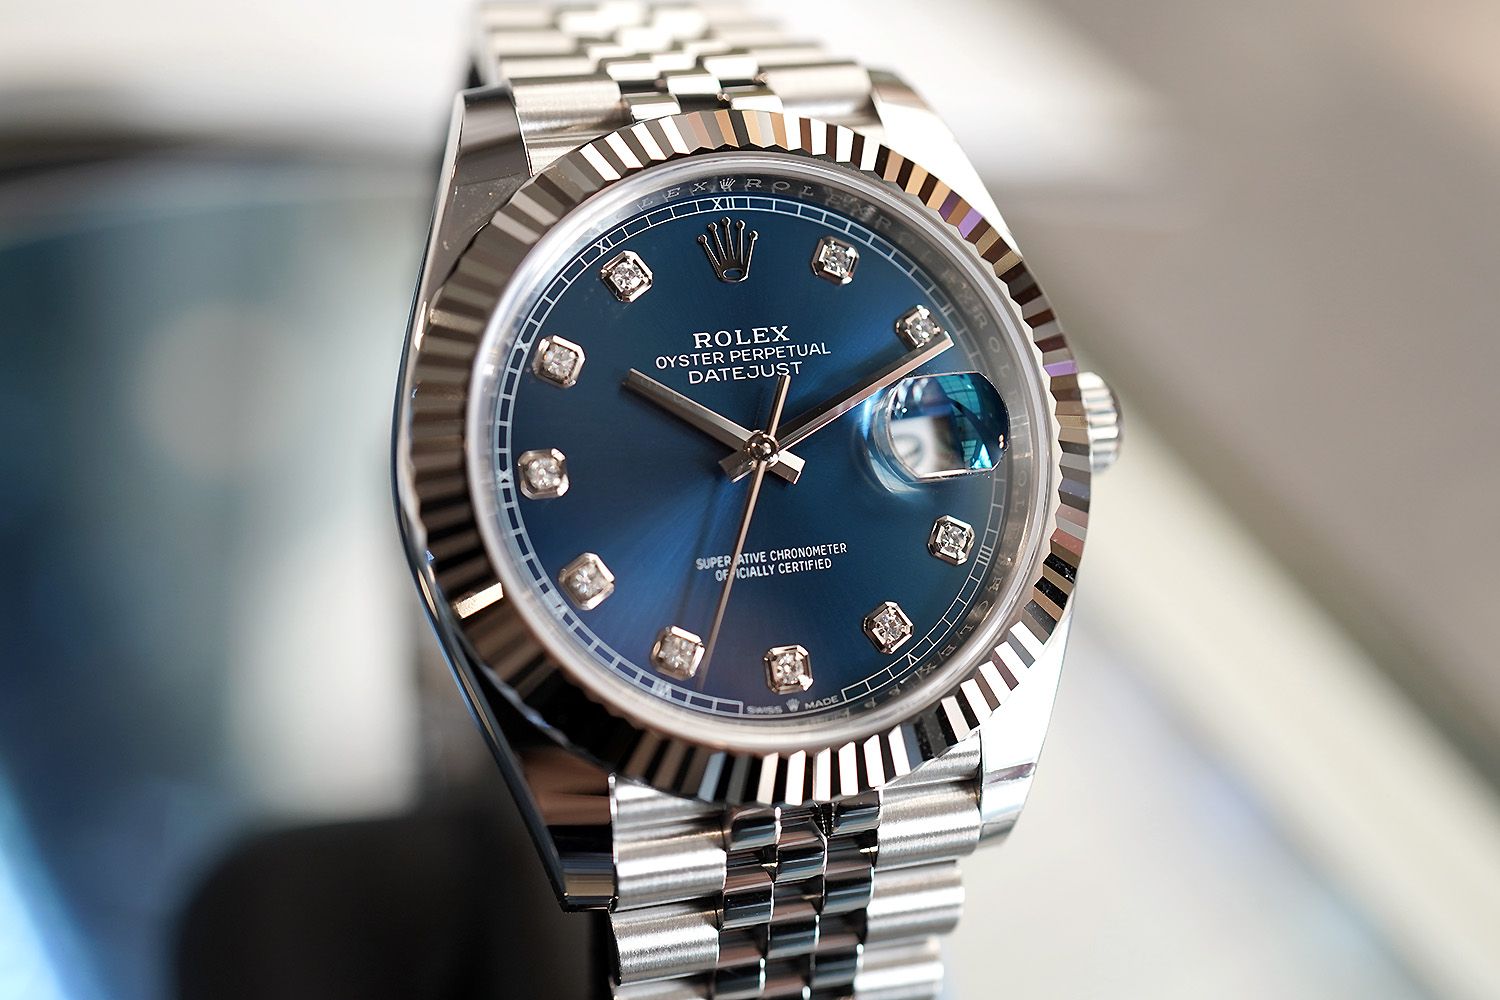 Đồng hồ Rolex Datejust 41mm 126334 mặt số xanh dương chải tia cọc số kim cương